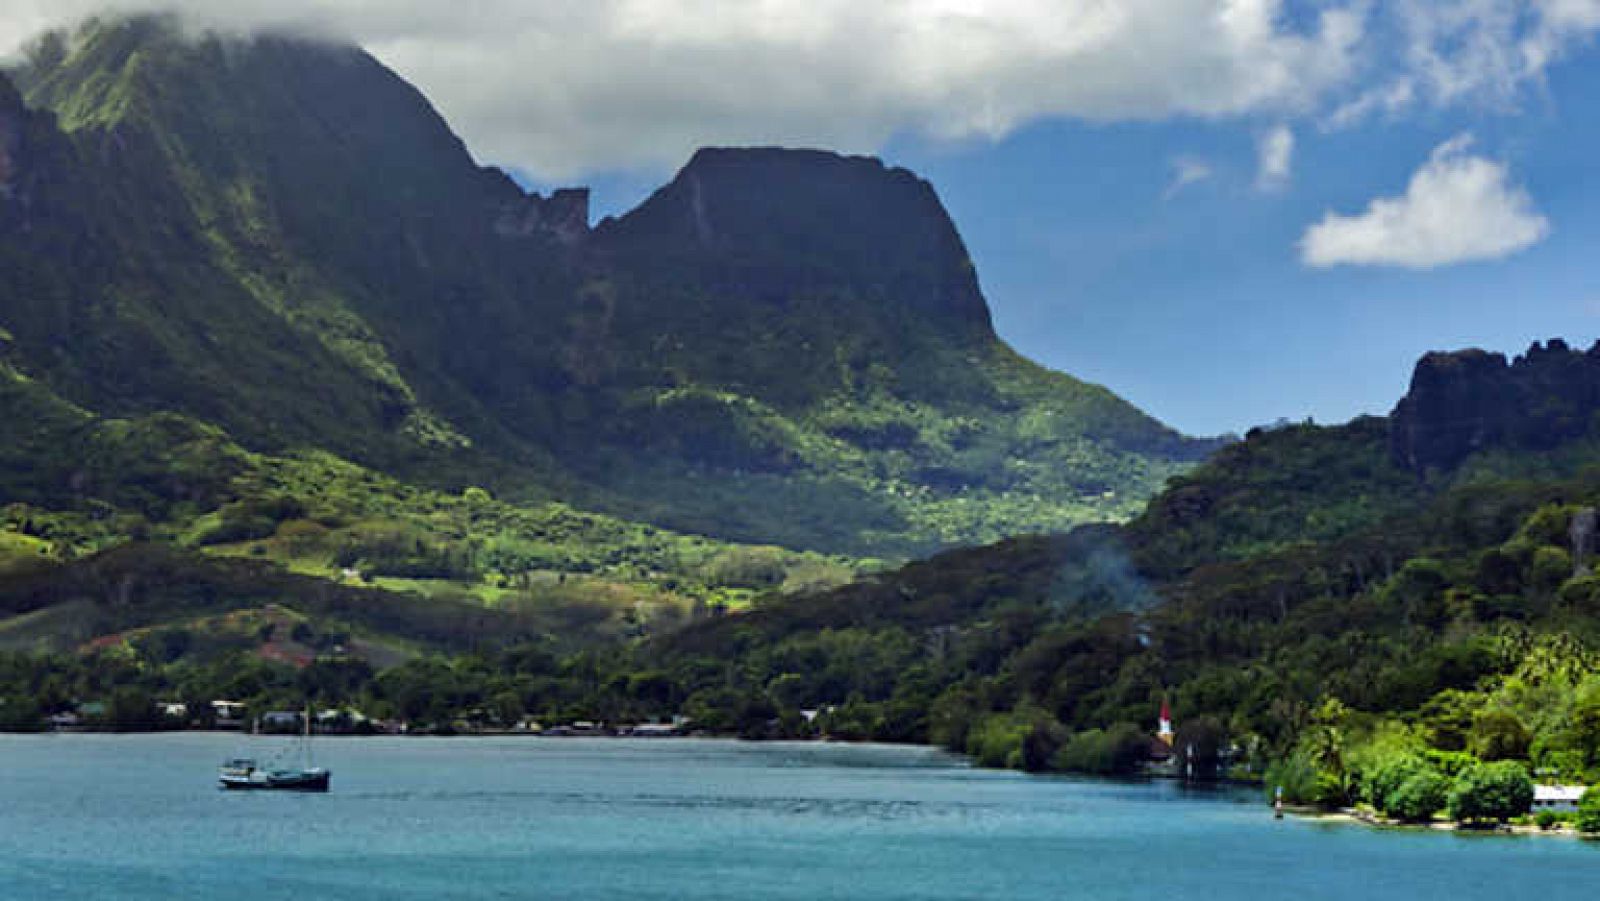 Grandes documentales - Trotamundos. Alrededor del mundo: Viajes por el Pacífico. De Santiago a la isla de Pitcairn